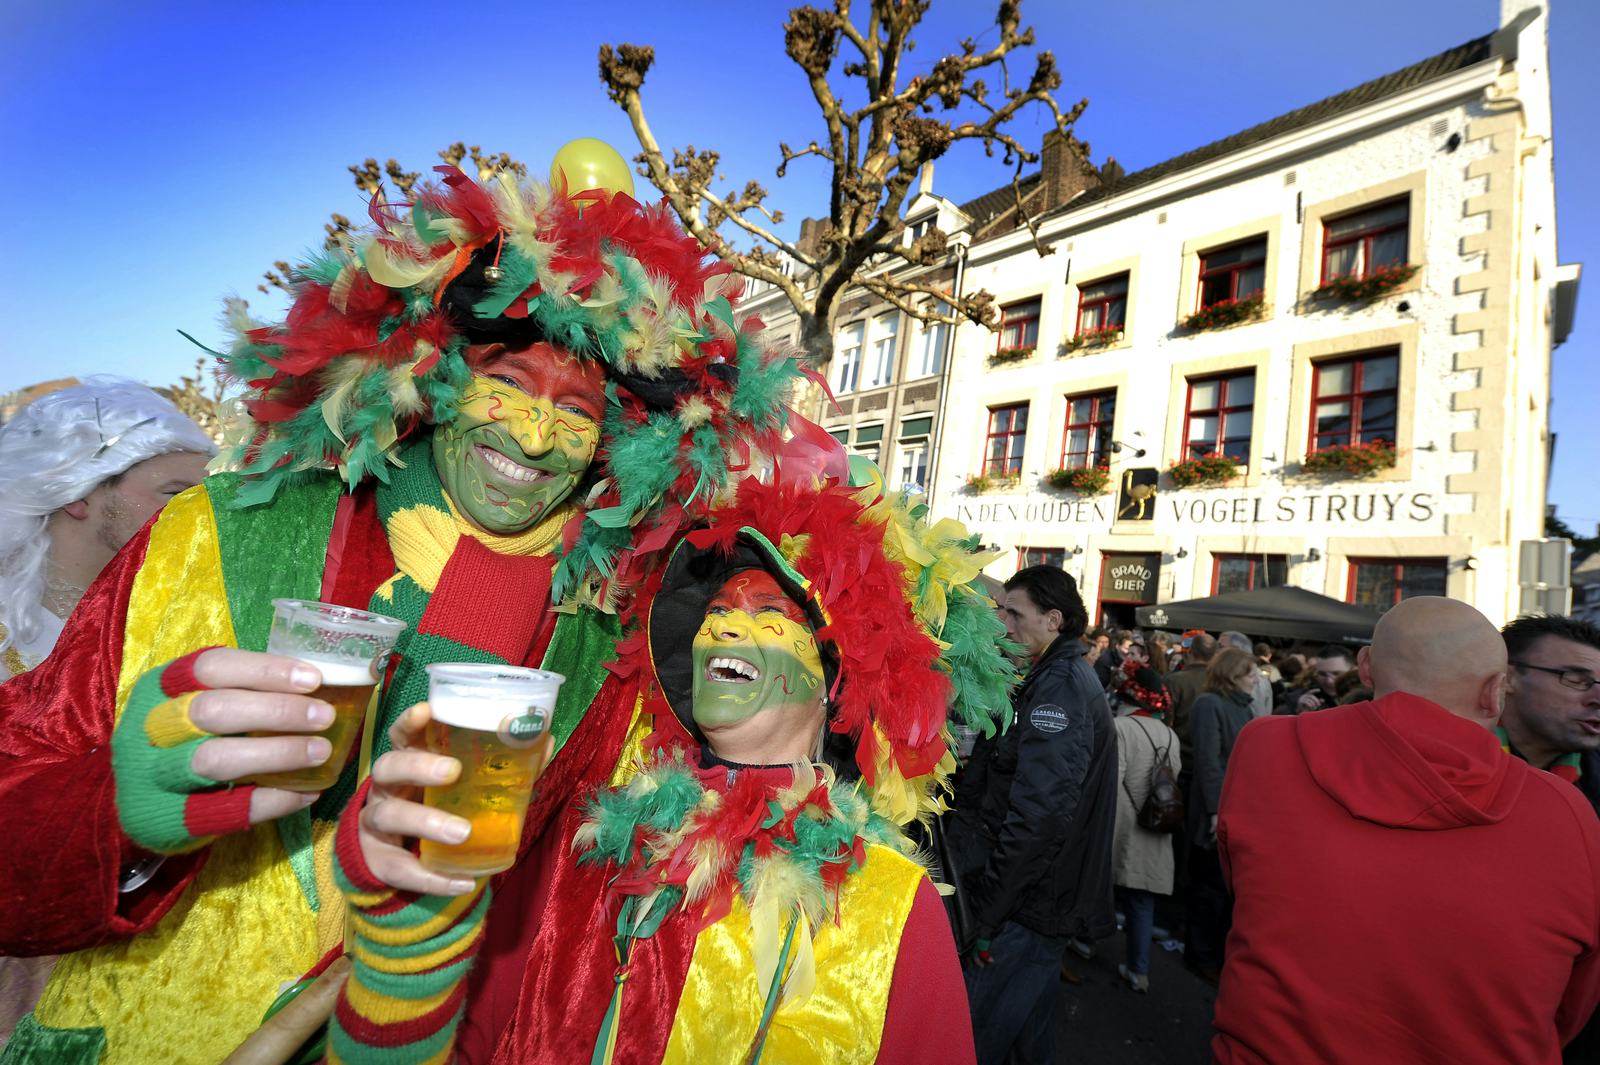 Horeca en carnaval: check leeftijd bij verkoop alcohol